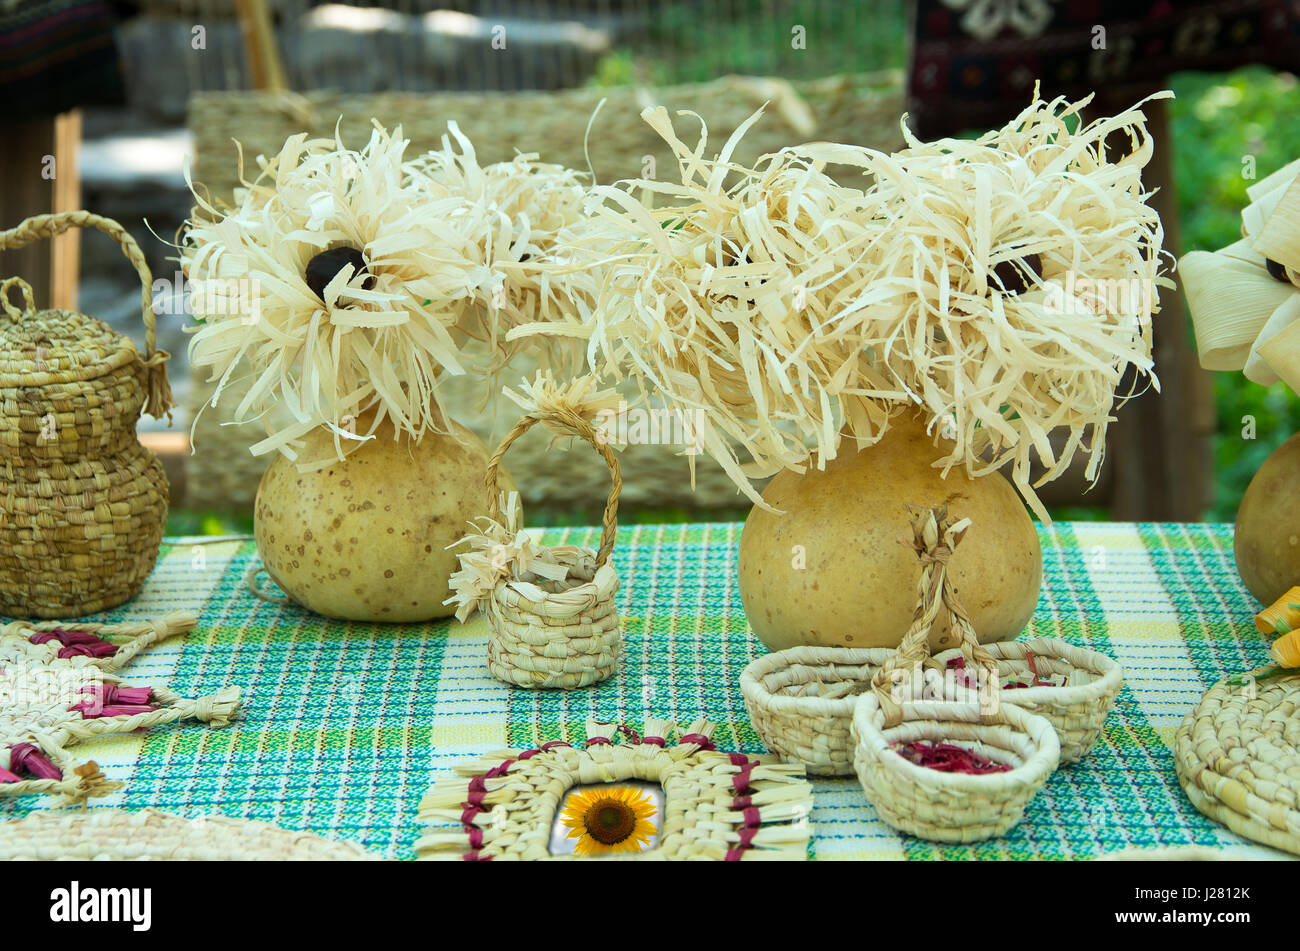 Tischdekoration aus natürlichen Materialien - Mais Schale und Kürbisse. Blumen, Vasen und andere Gegenstände Stockfoto